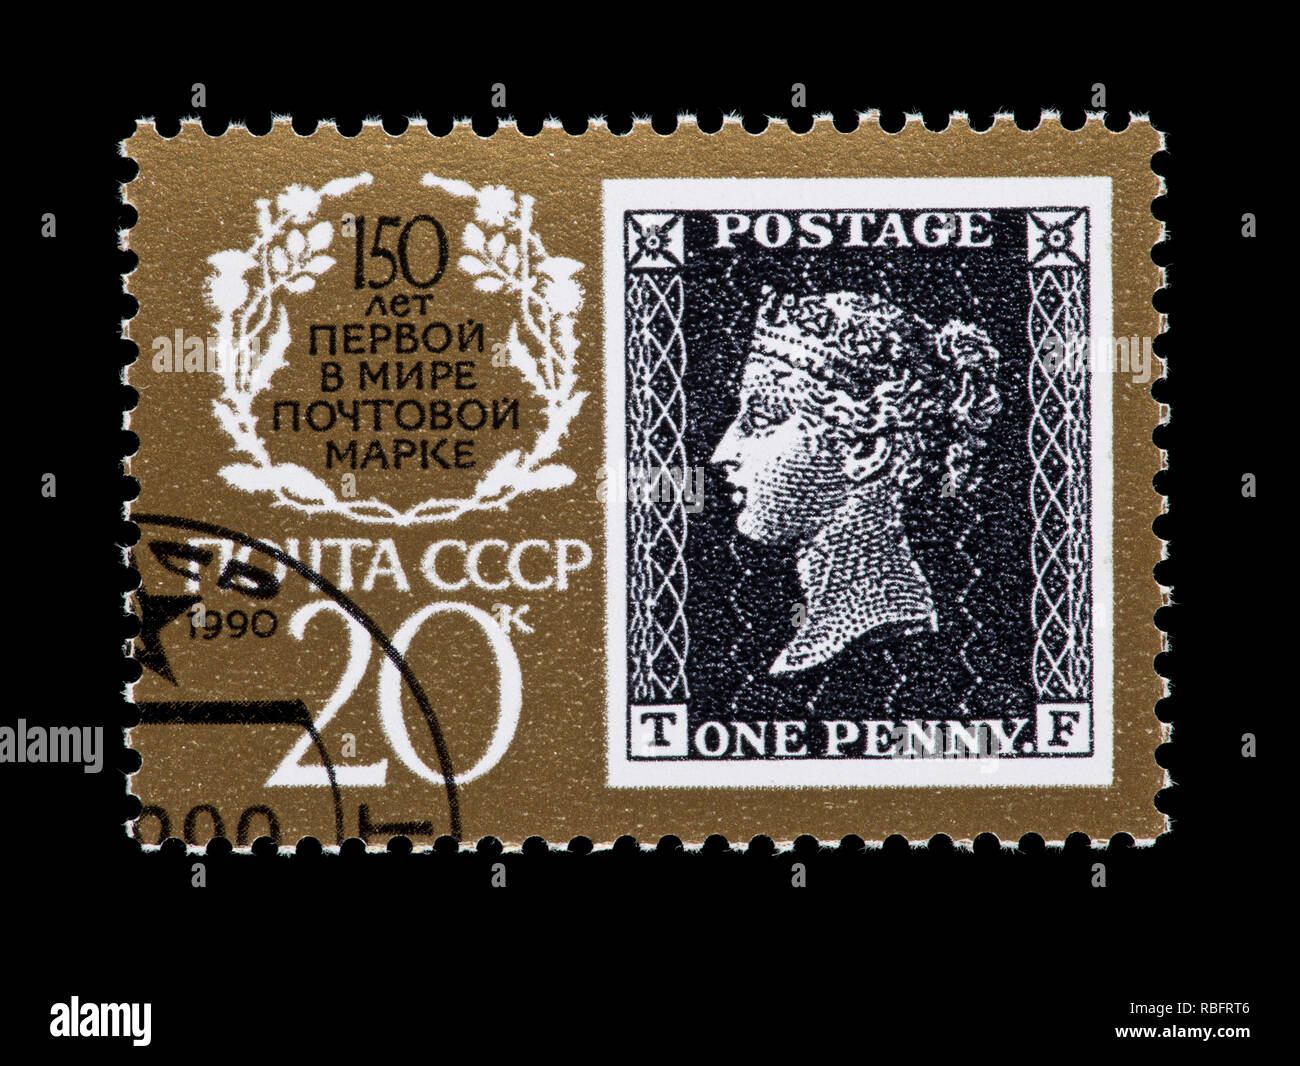 Briefmarke aus der Sowjetunion, die die Penny Black Stempel aus Großbritannien und ein Emblem. Stockfoto